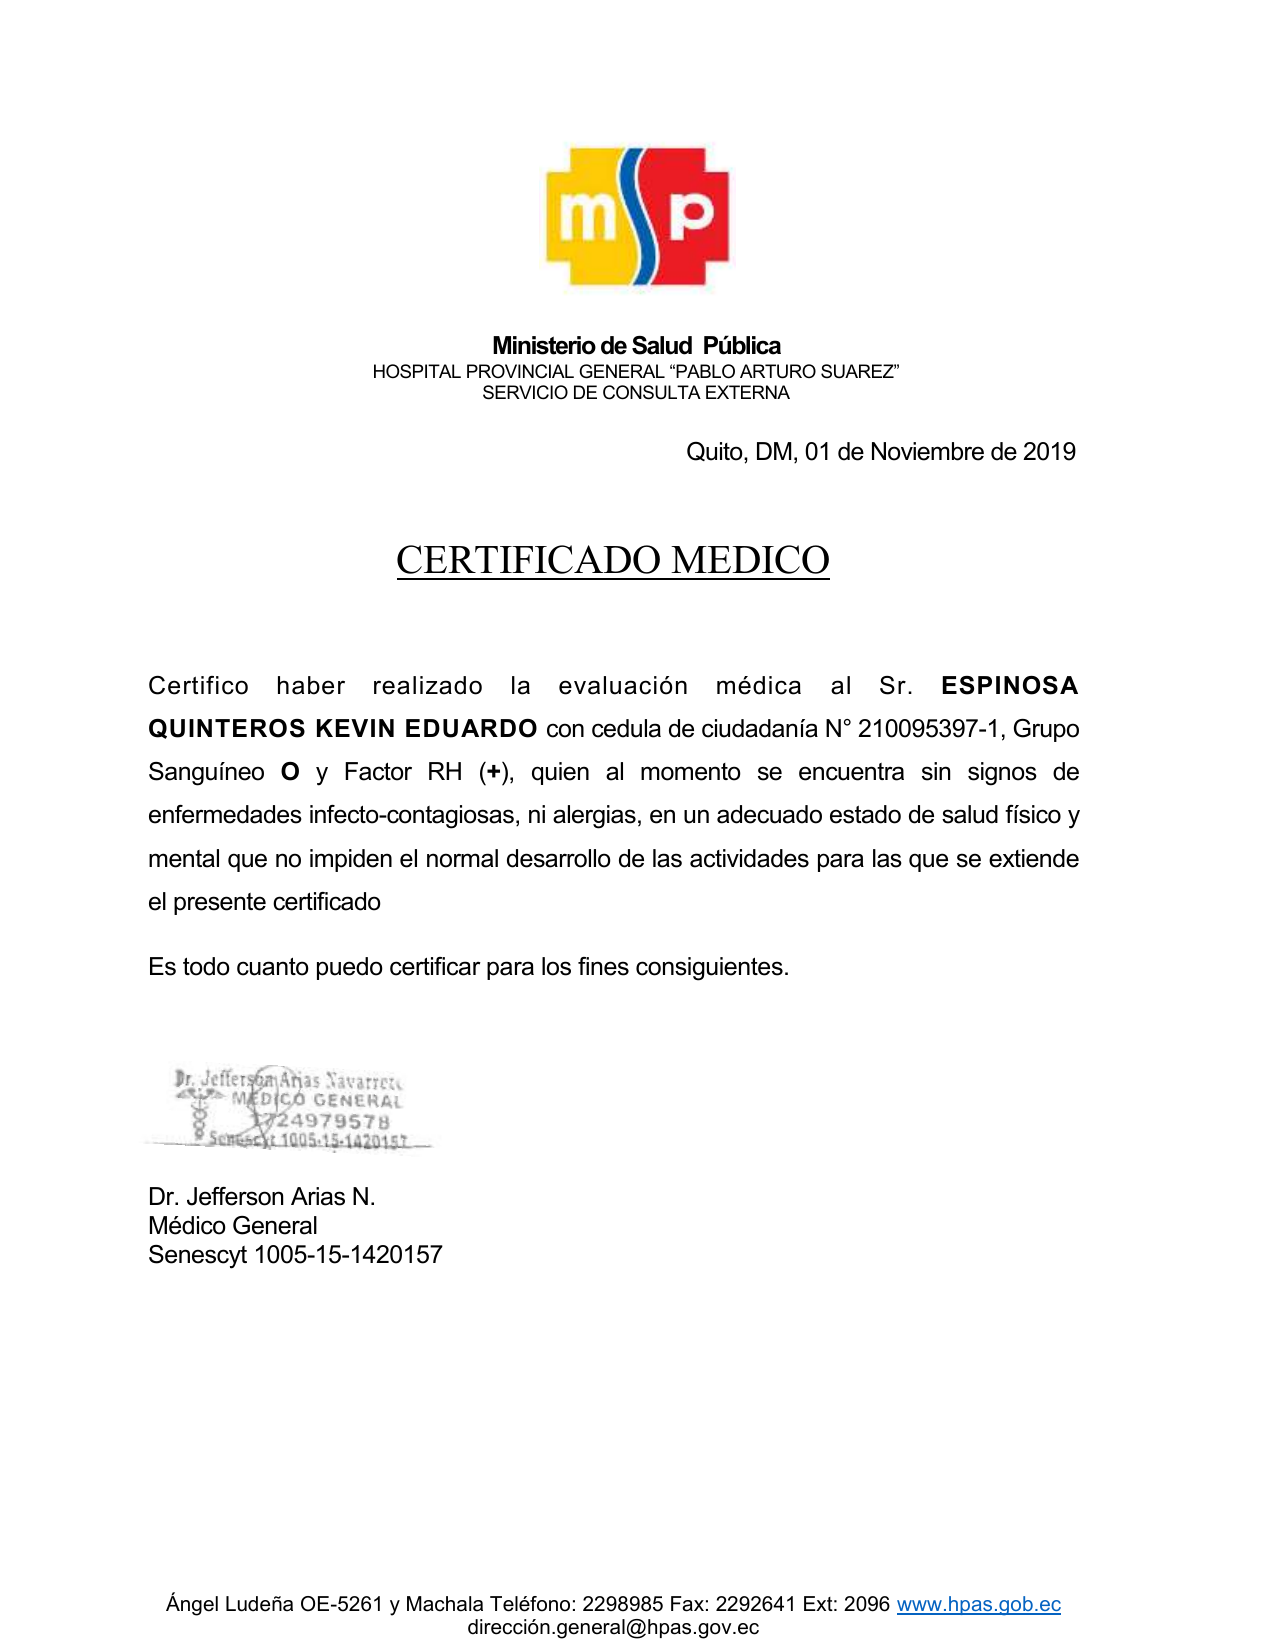 Certificado De Salud Ecuador Images And Photos Finder